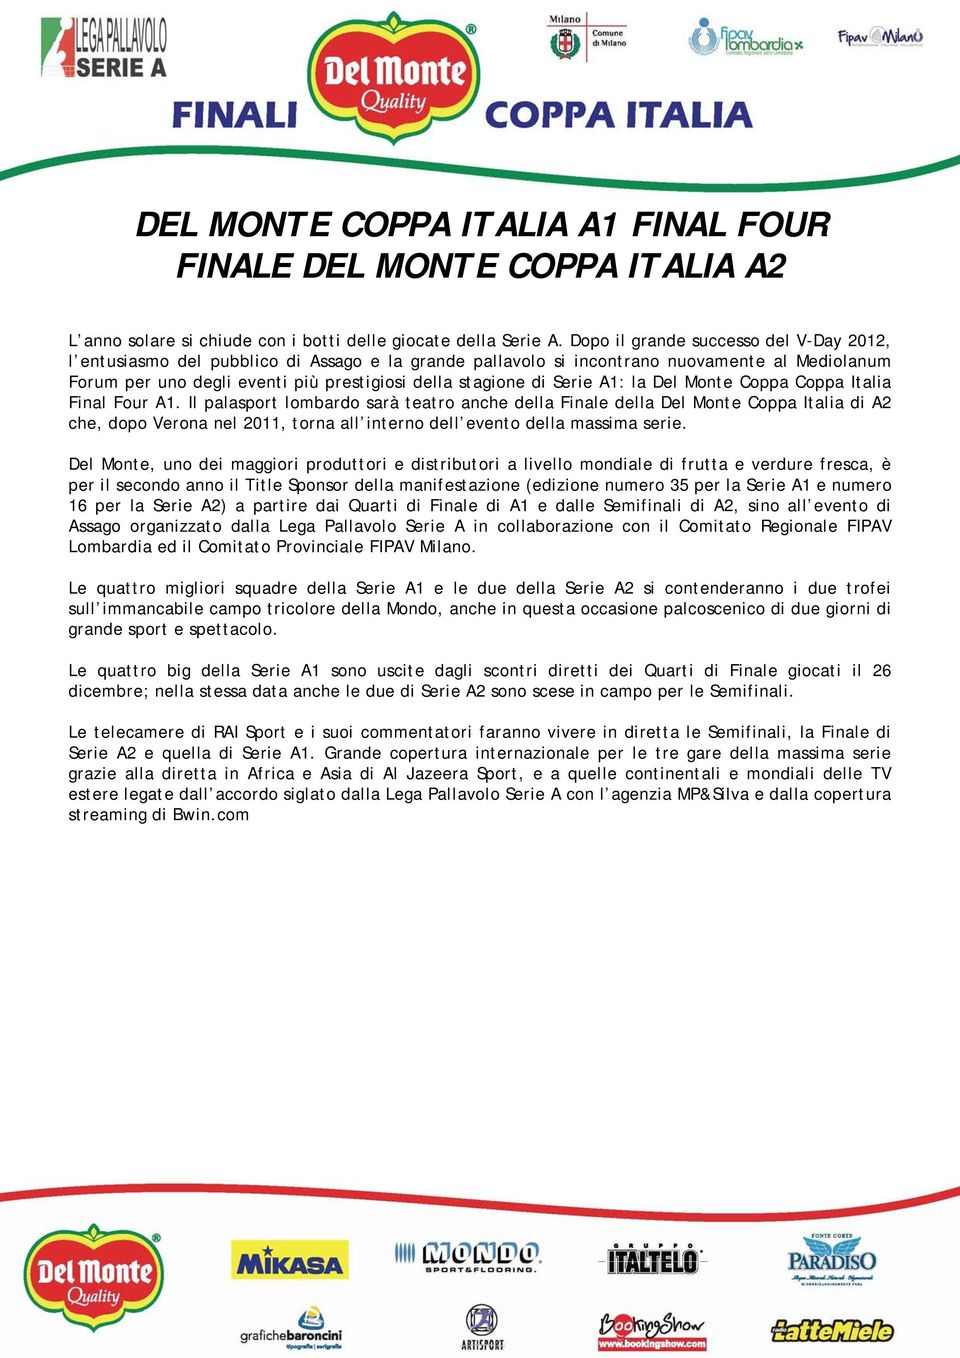 Serie A1: la Del Monte Coppa Coppa Italia Final Four A1.